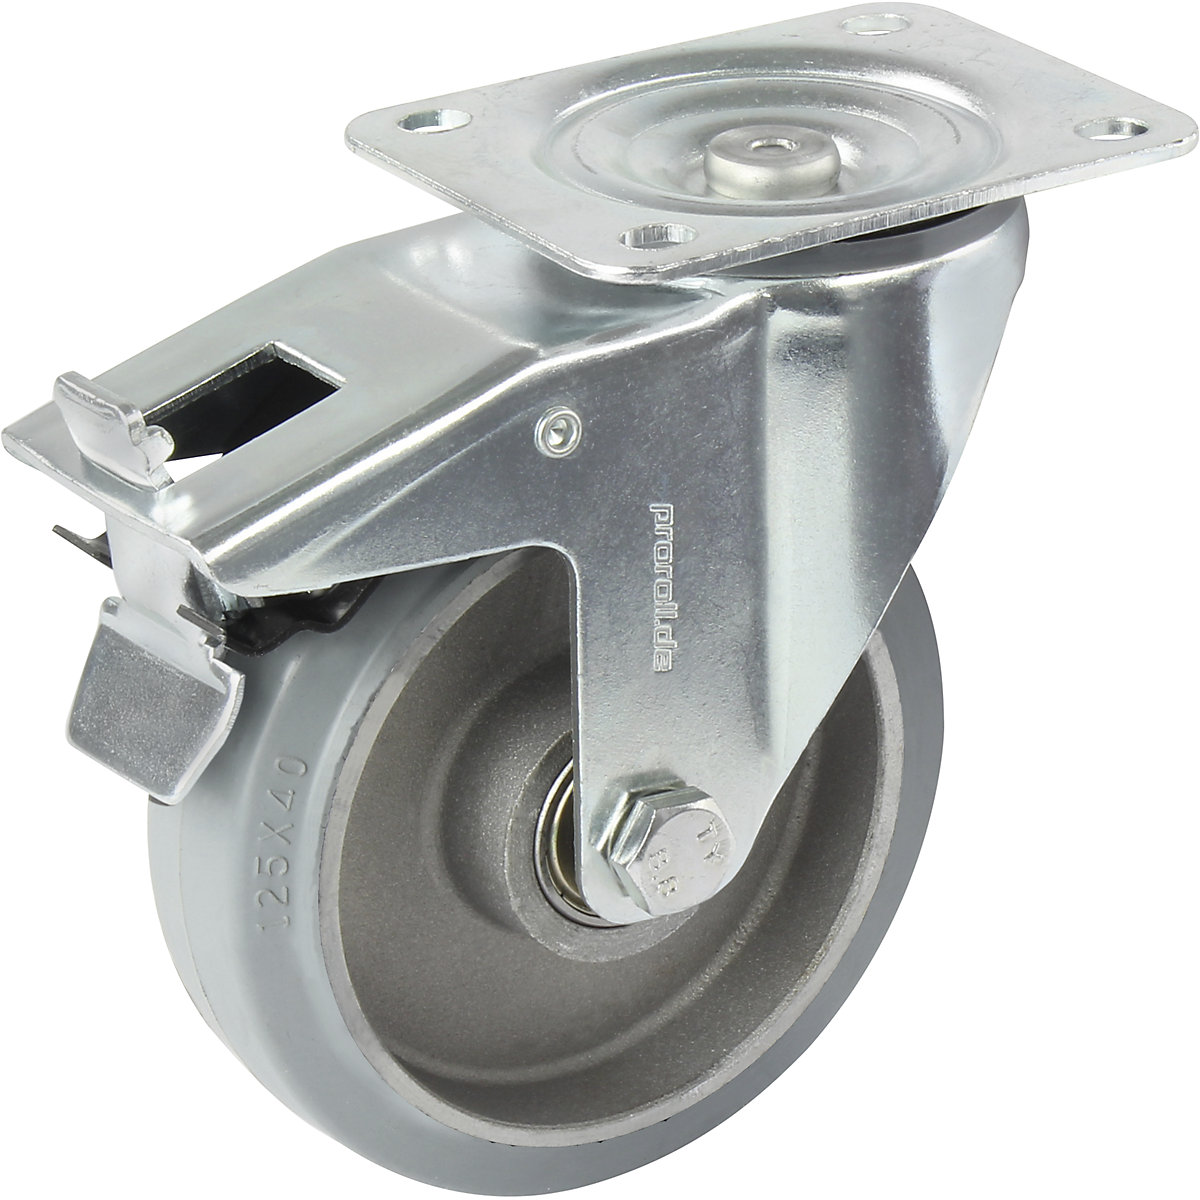 Elastická celogumová obruč, šedá – Proroll, Ø x šírka kolesa 100 x 40 mm, voštinový disk, otočné koliesko s dvojitou brzdou-3